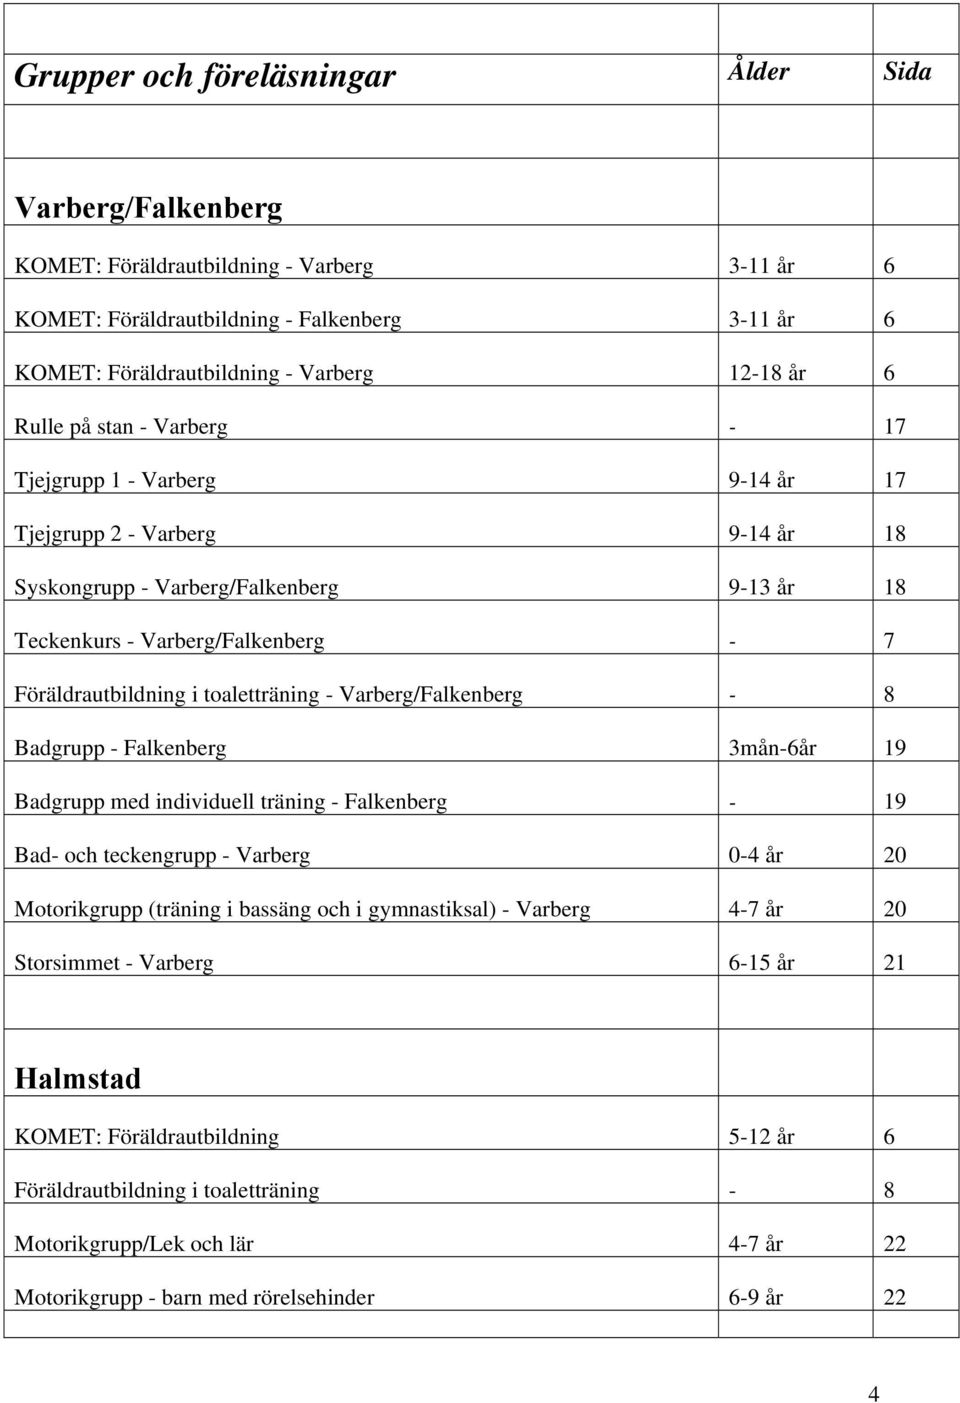 toaletträning - Varberg/Falkenberg - 8 Badgrupp - Falkenberg 3mån-6år 19 Badgrupp med individuell träning - Falkenberg - 19 Bad- och teckengrupp - Varberg 0-4 år 20 Motorikgrupp (träning i bassäng